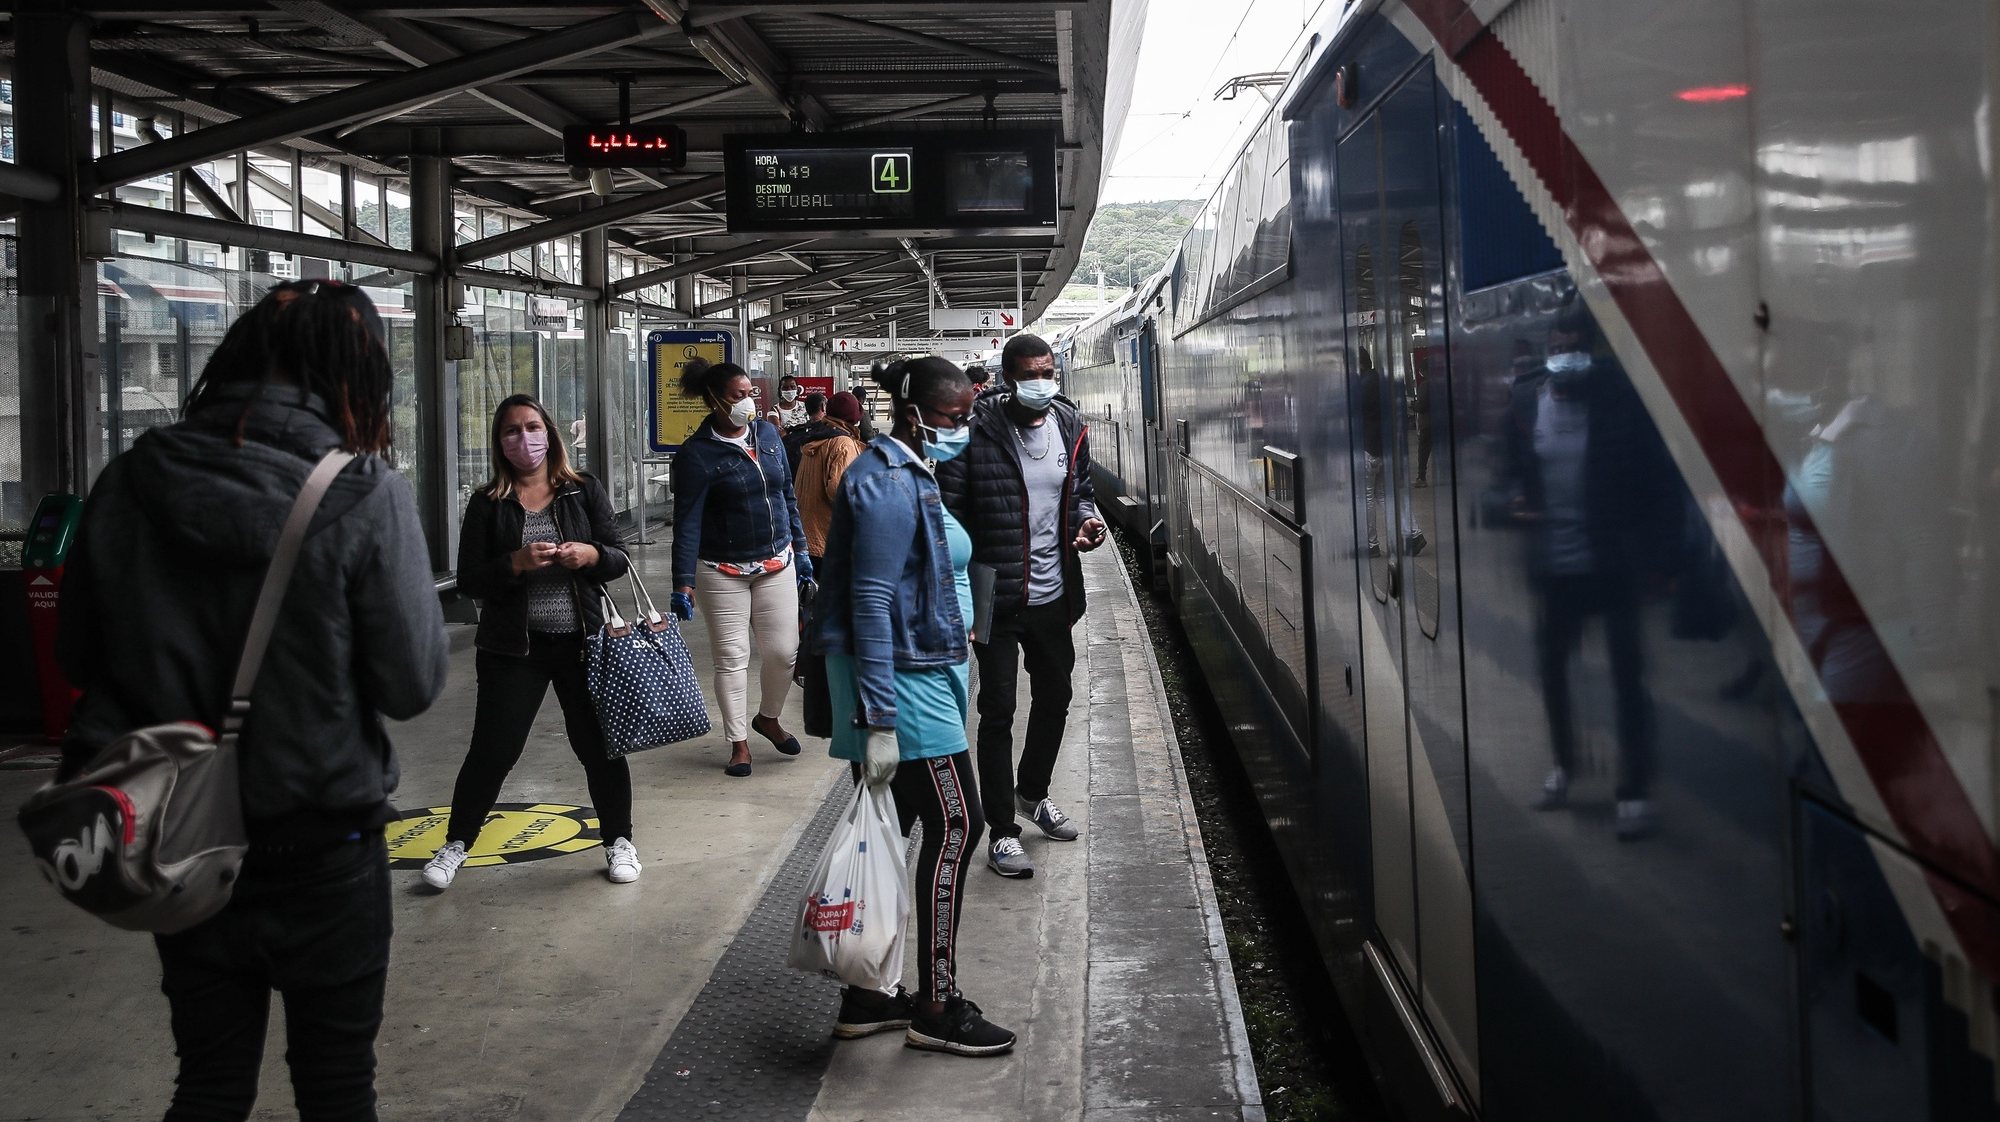 Pessoas esperam para entrar em um comboio da Fertagus na estação de Sete Rios, Lisboa, 4 de maio de 2020. Portugal encontra-se em situação de calamidade, depois de três períodos consecutivos em estado de emergência. Neste novo período, vai ser obrigatório o uso de máscaras em transportes públicos. MÁRIO CRUZ/LUSA